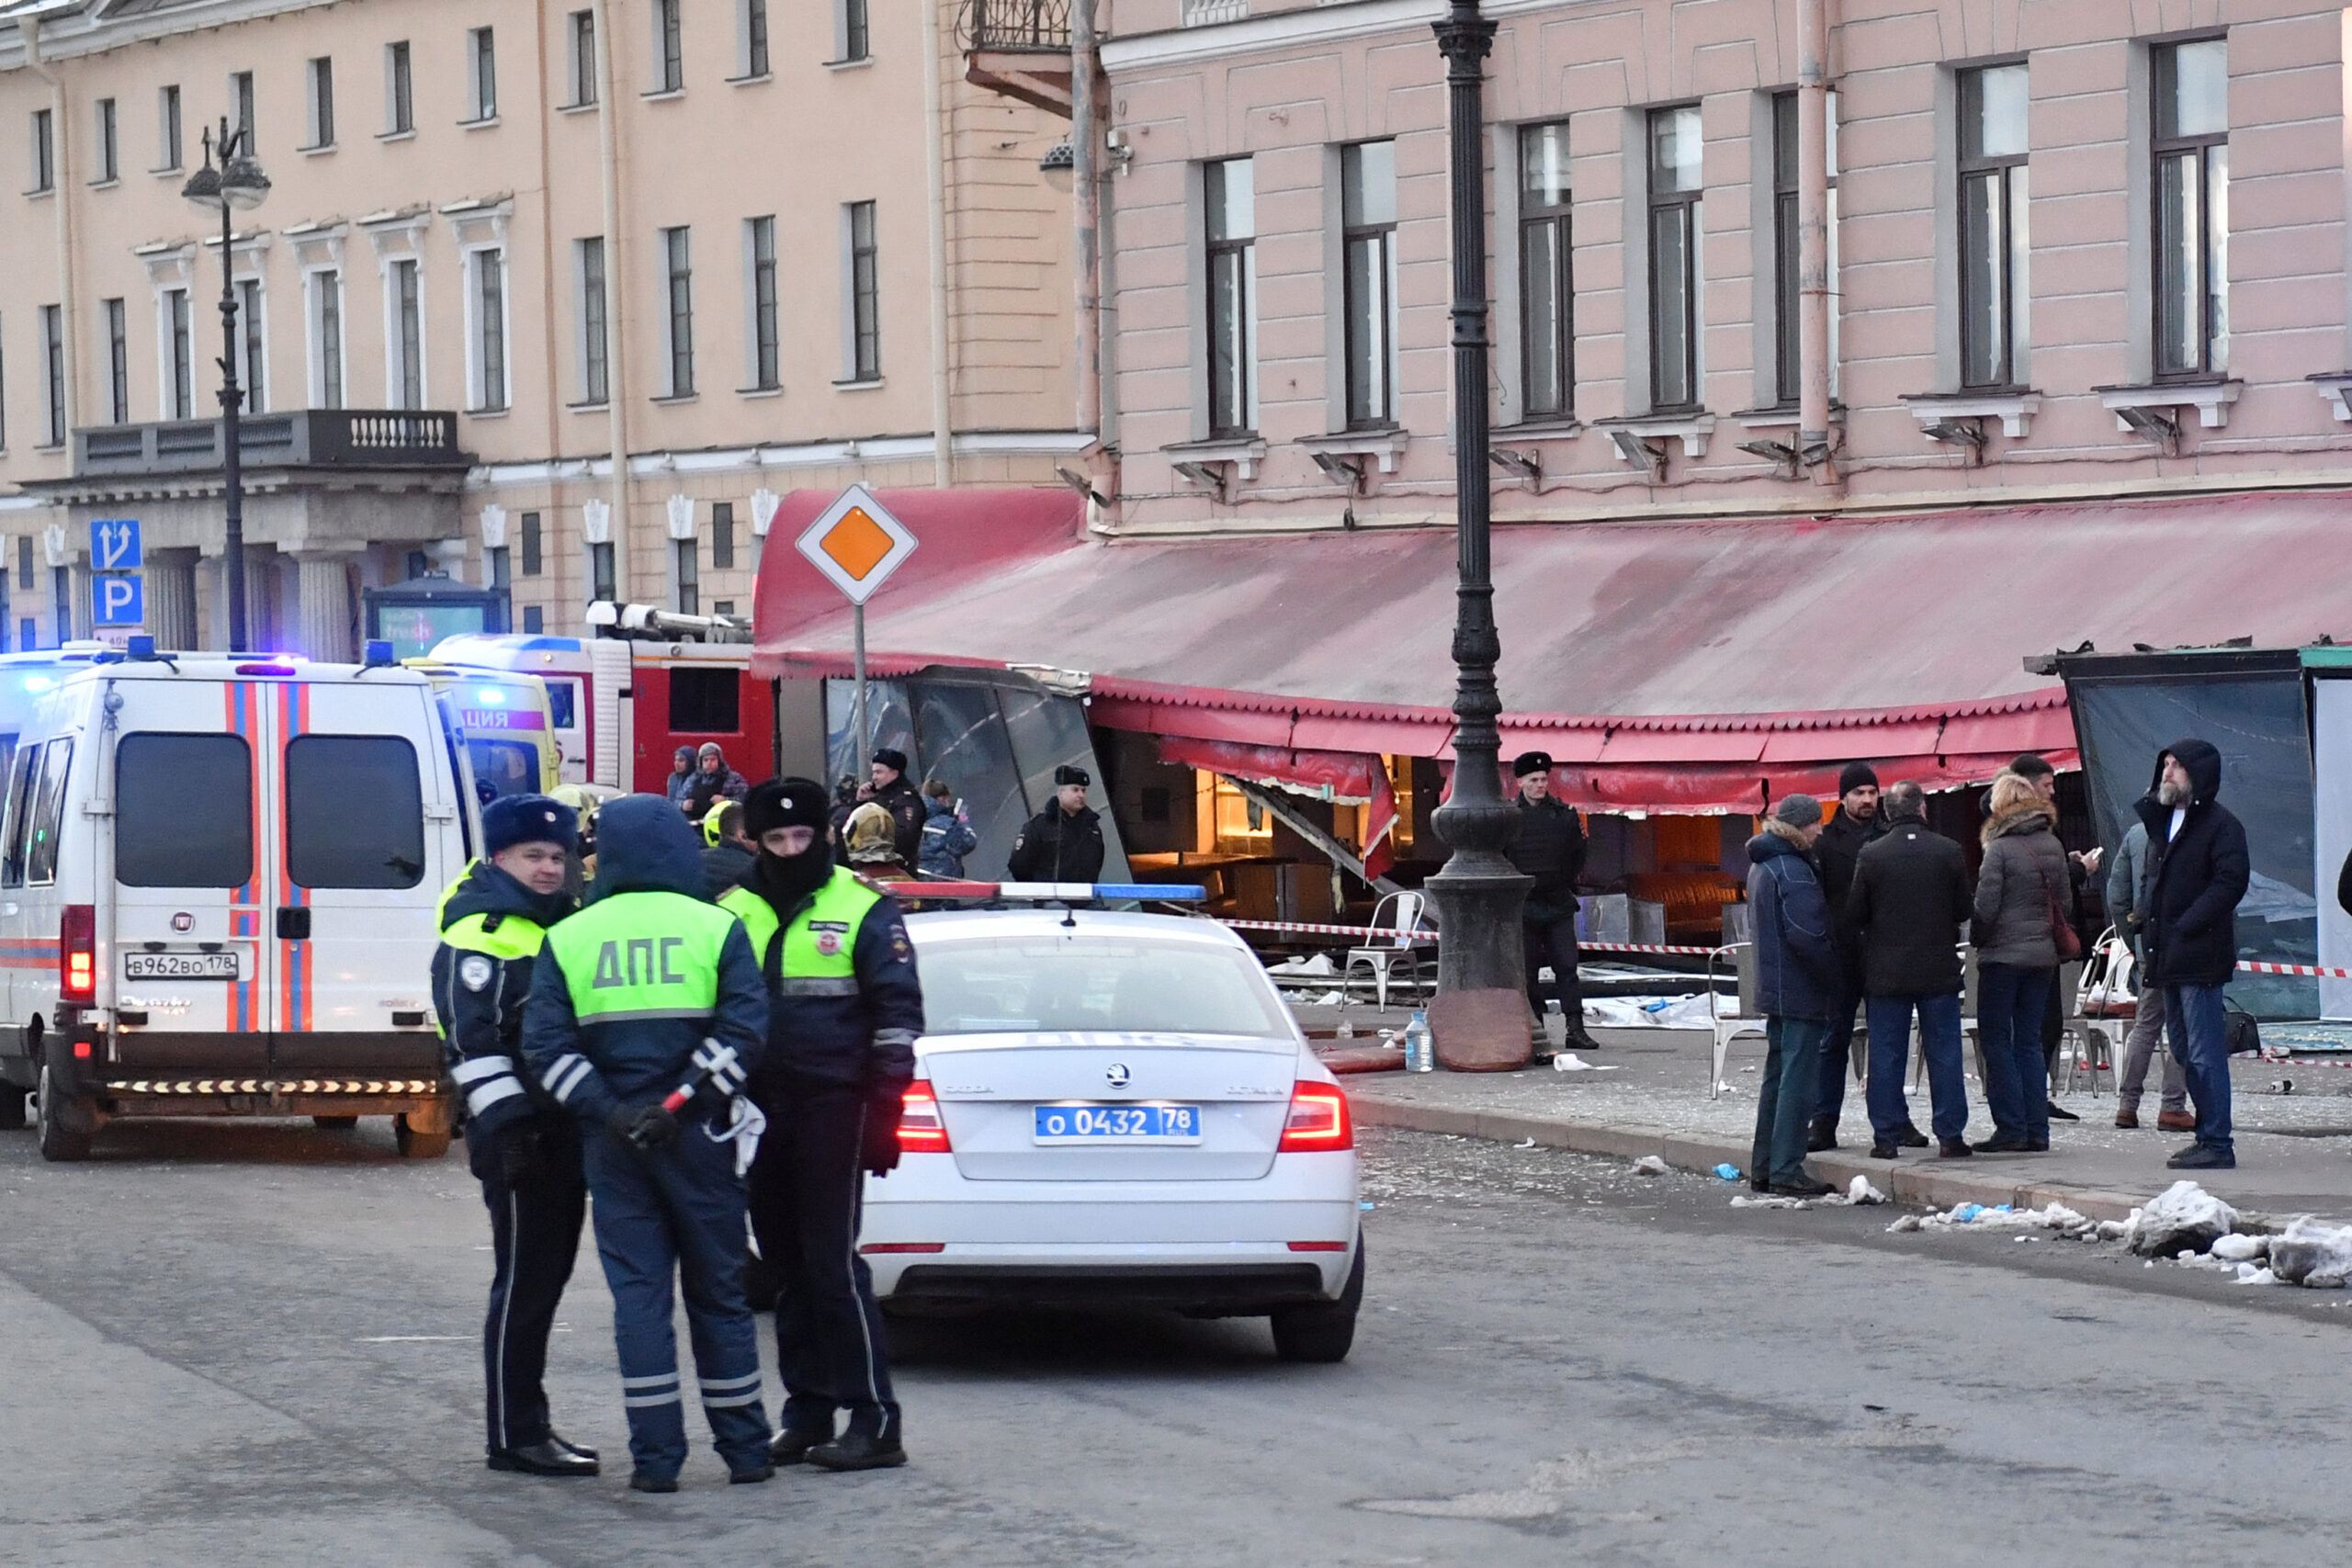 Αγία Πετρούπολη: 32 οι τραυματίες από την έκρηξη που σκότωσε γνωστό στρατιωτικό μπλόγκερ